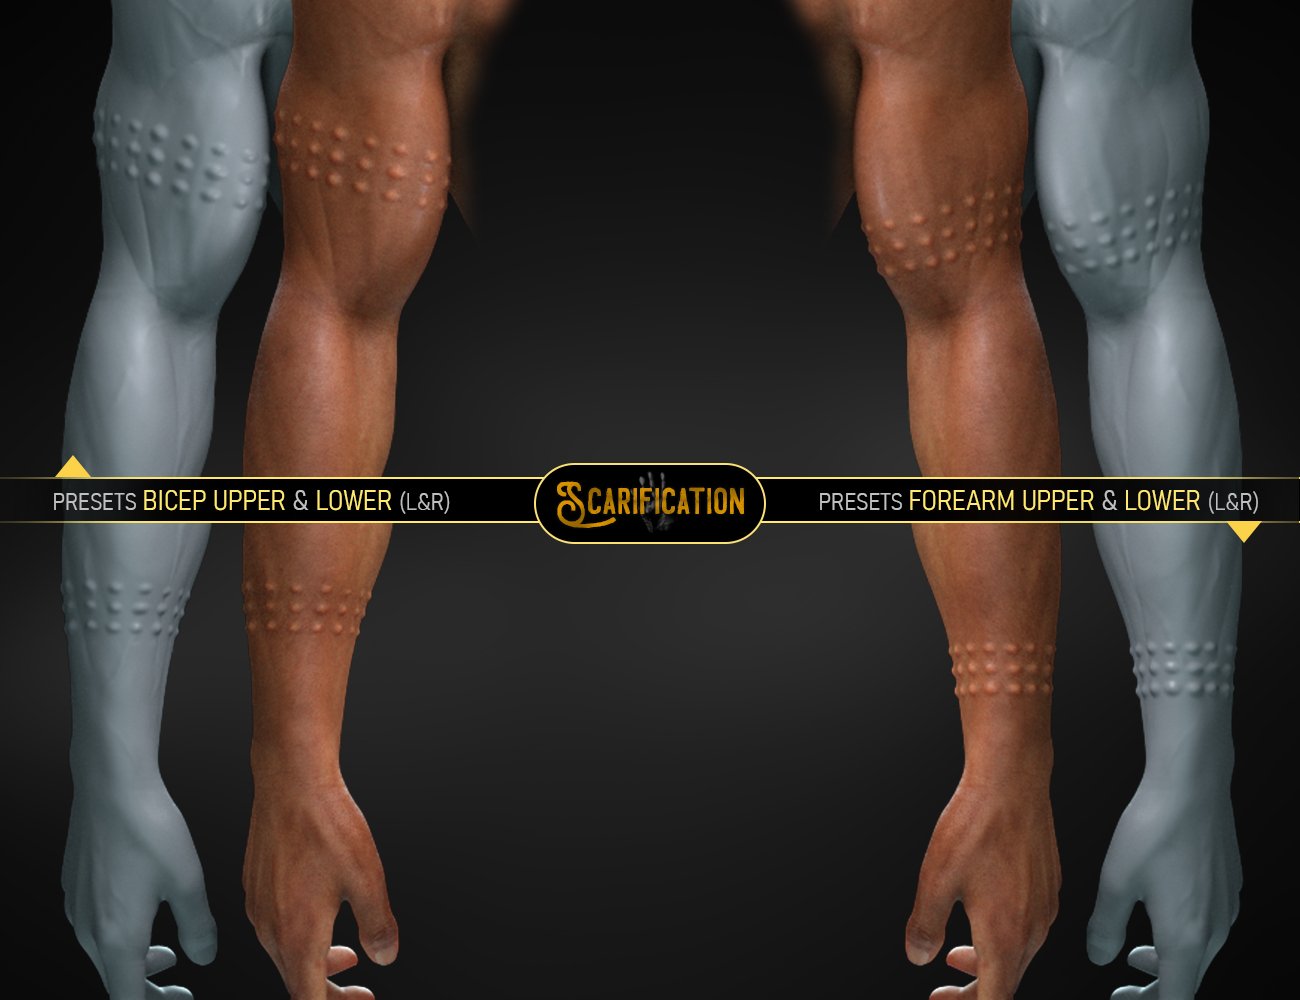 HD Scarification for Genesis 8 and 8.1 Males by: FenixPhoenixEsid, 3D Models by Daz 3D